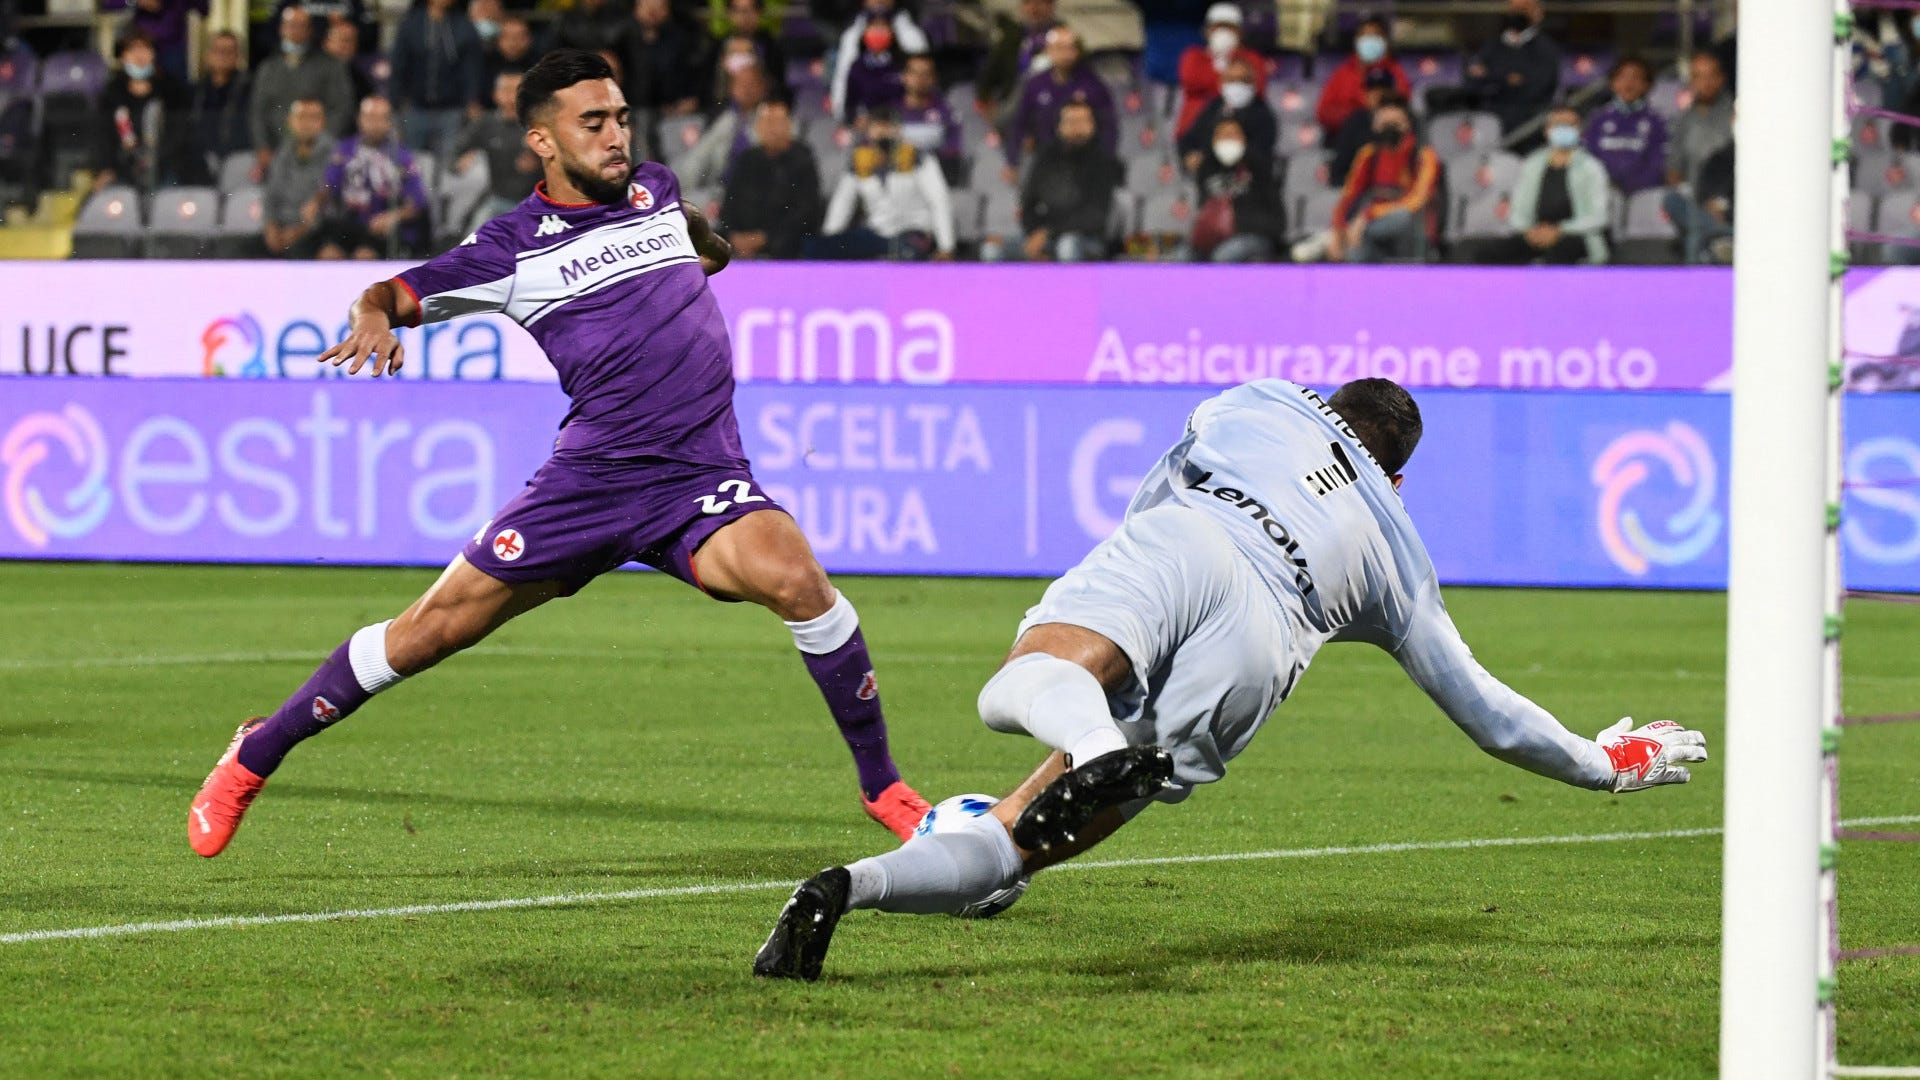 Fiorentina vs. Inter en partido online, resultado, videos y | Goal.com Espana